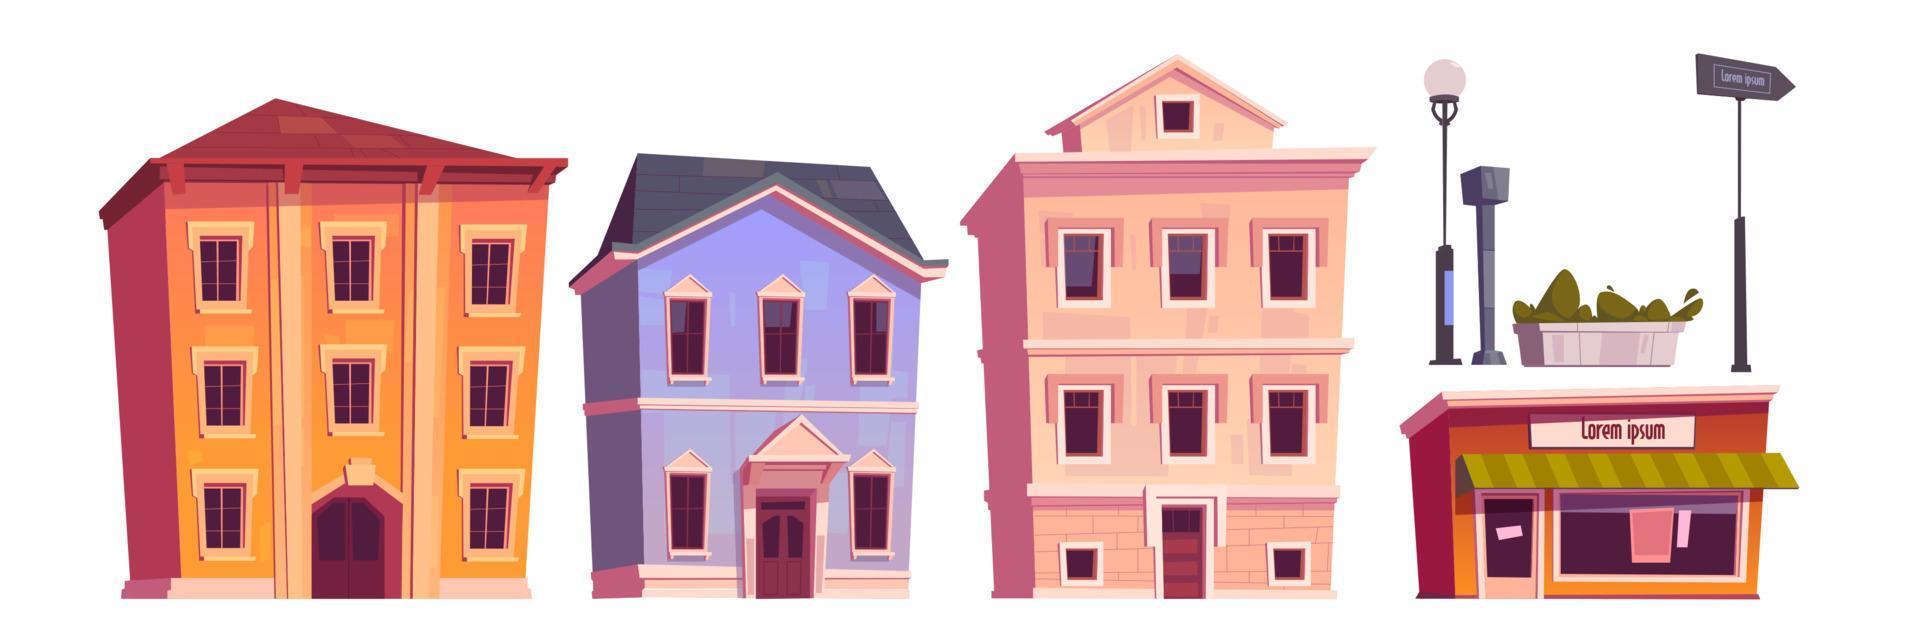 edificios retro, casas antiguas de pueblo o ciudad vector